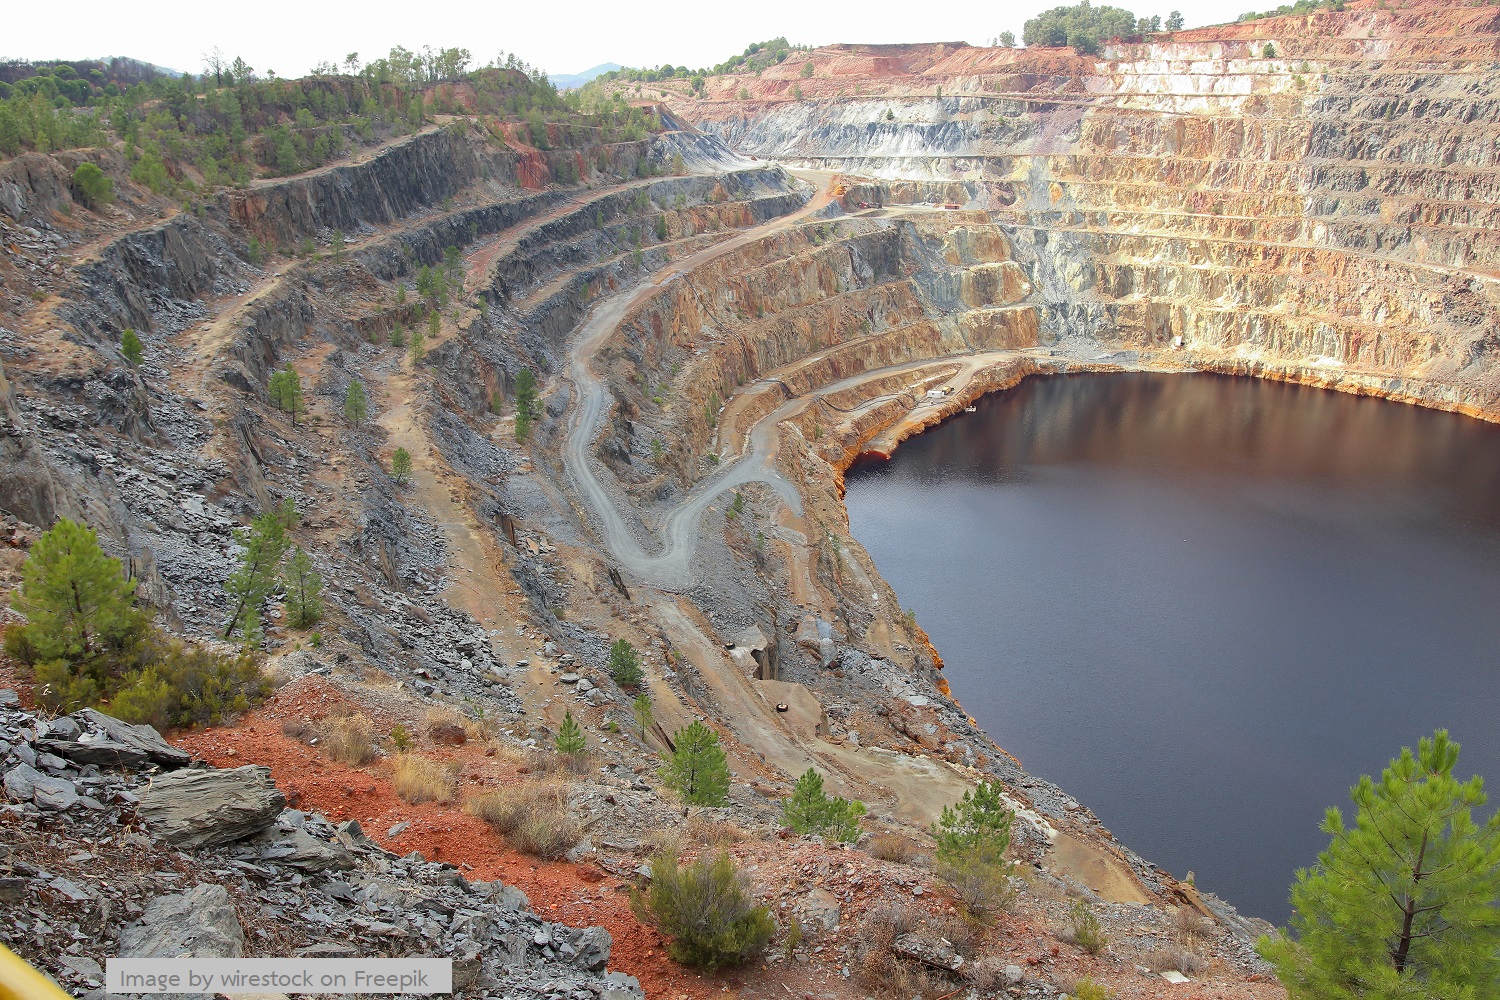 ERG ทุ่ม 1.8 พันล้านดอลลาร์สหรัฐ เพิ่มการผลิตทองแดงและโคบอลต์เท่าตัว